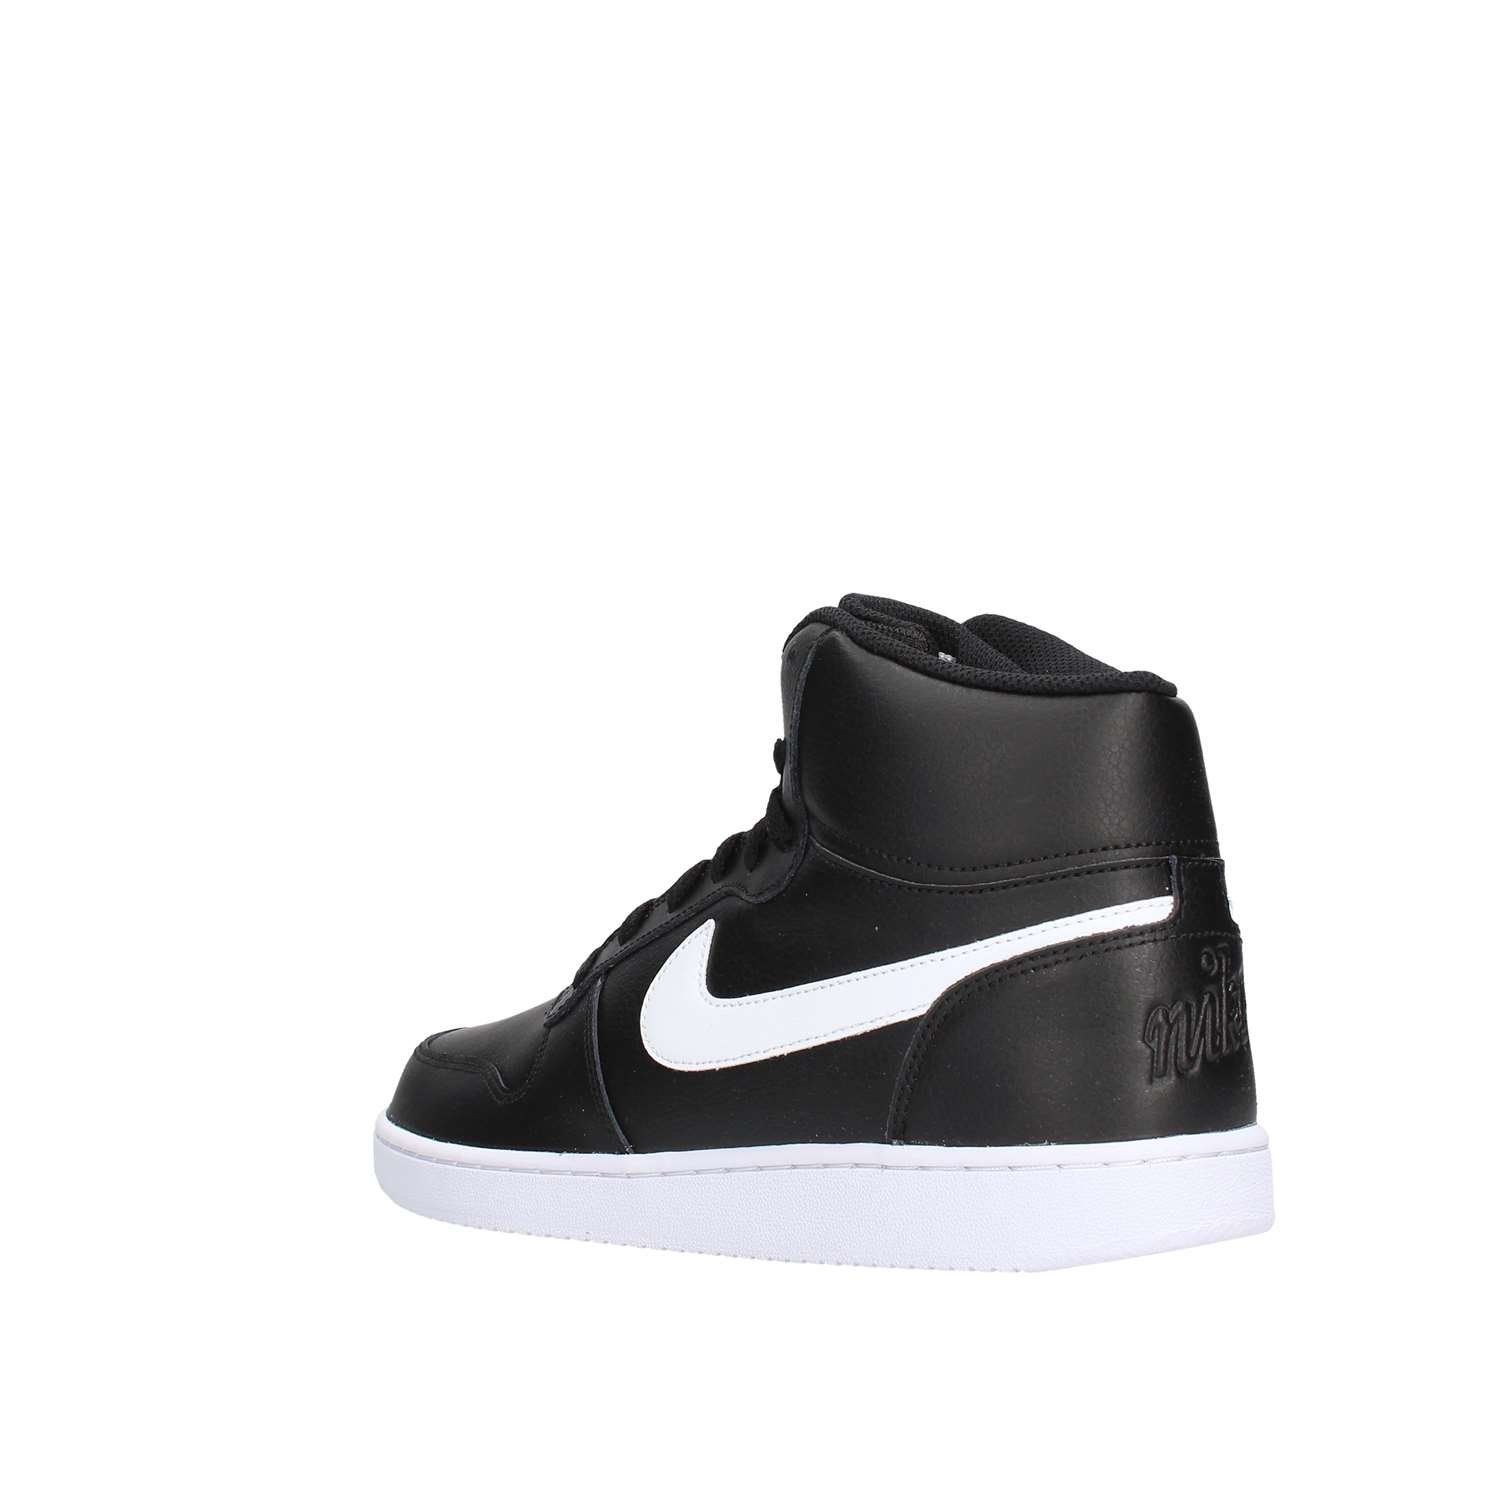 [ナイキ] Nike - Ebernon Mid [並行輸入品] - AQ1773002 - Color: 黒 - Size: 27.0 [ブラック] [27.0 cm]